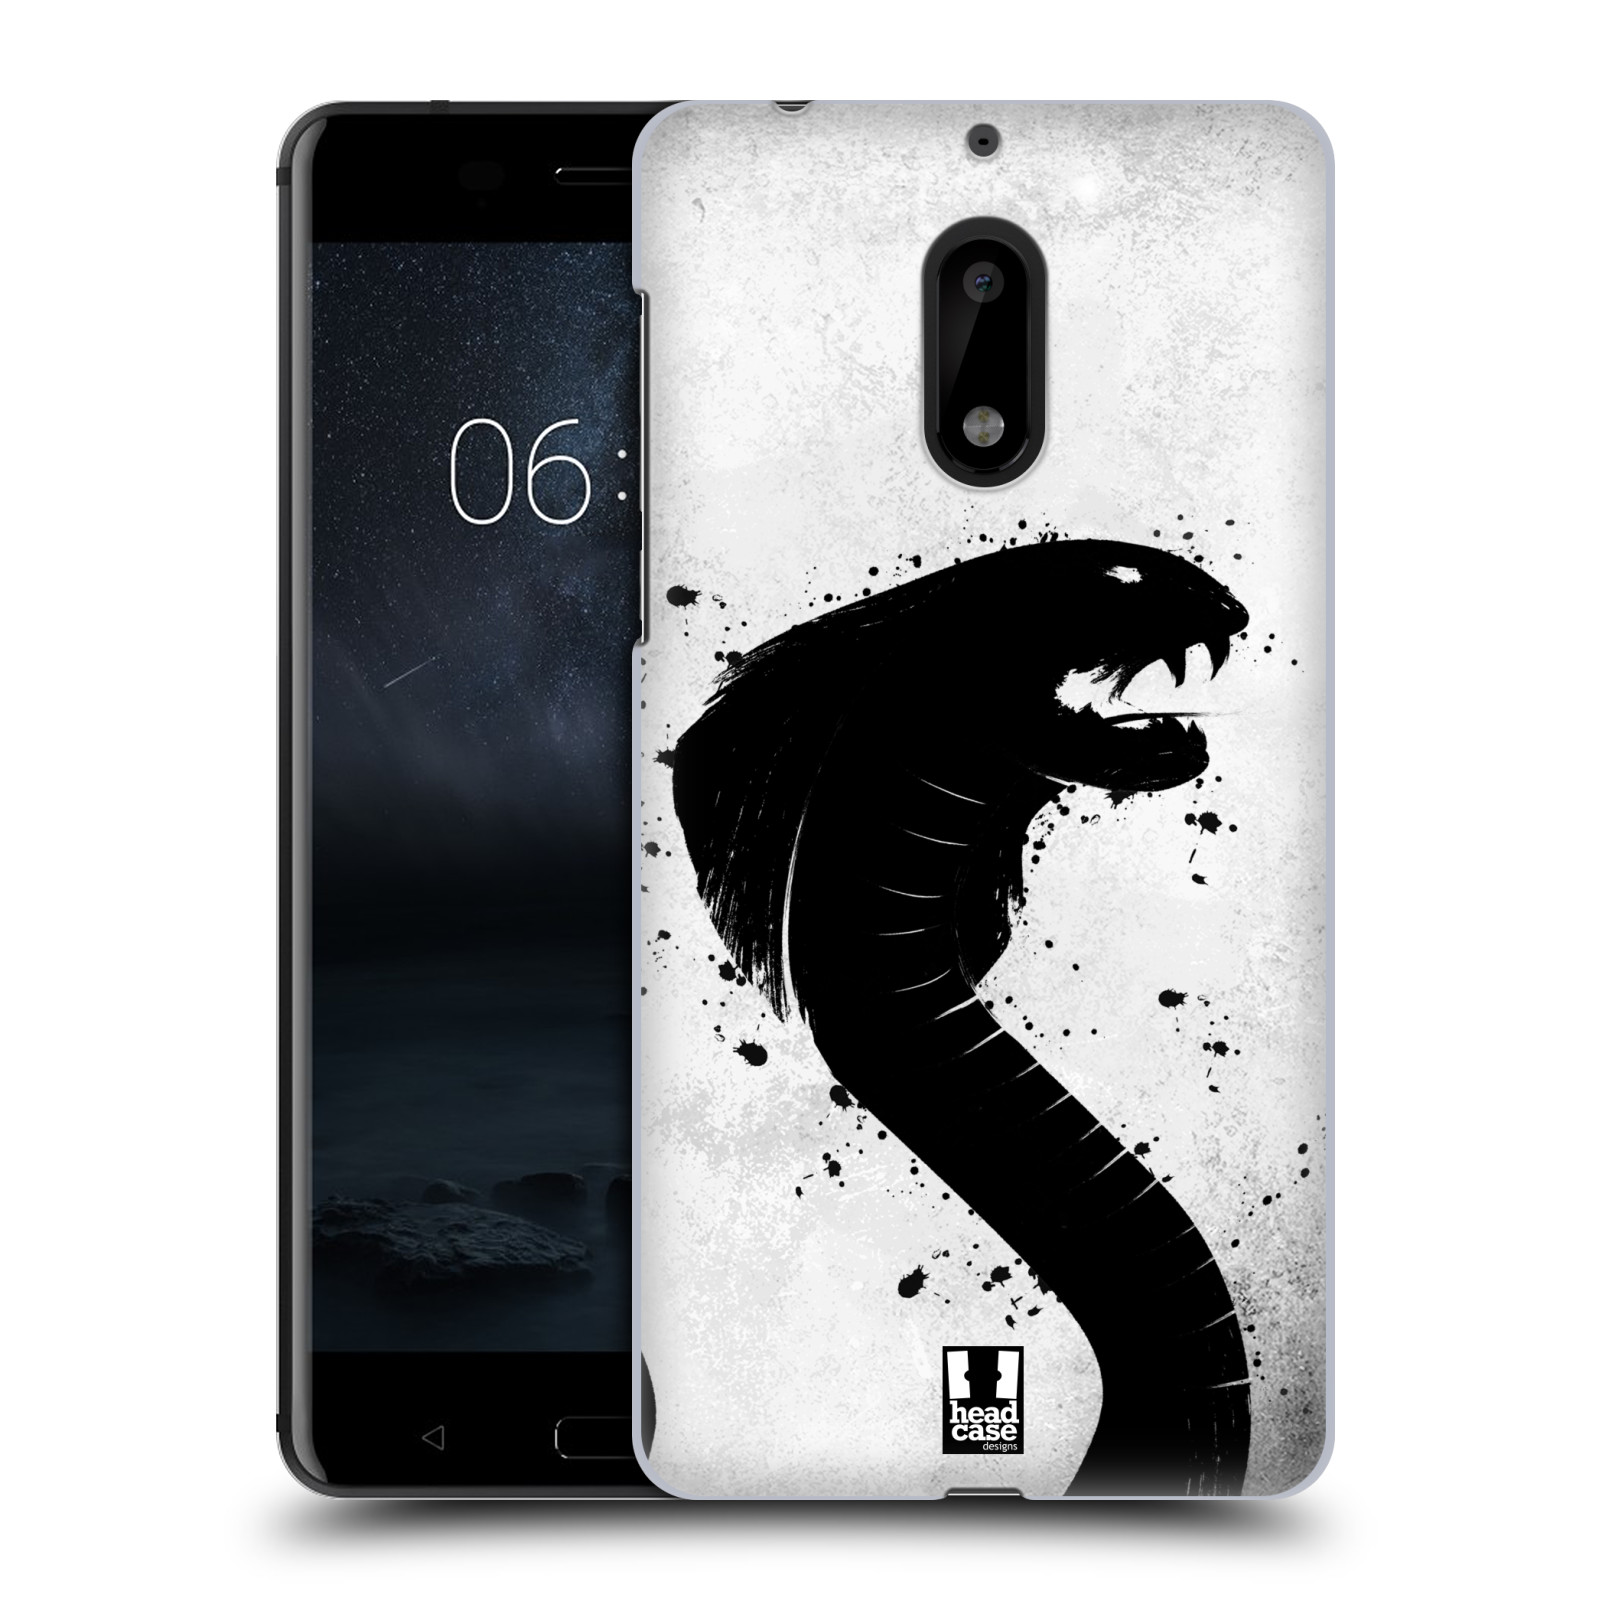 HEAD CASE plastový obal na mobil Nokia 6 vzor Kresba tuš zvíře had kobra